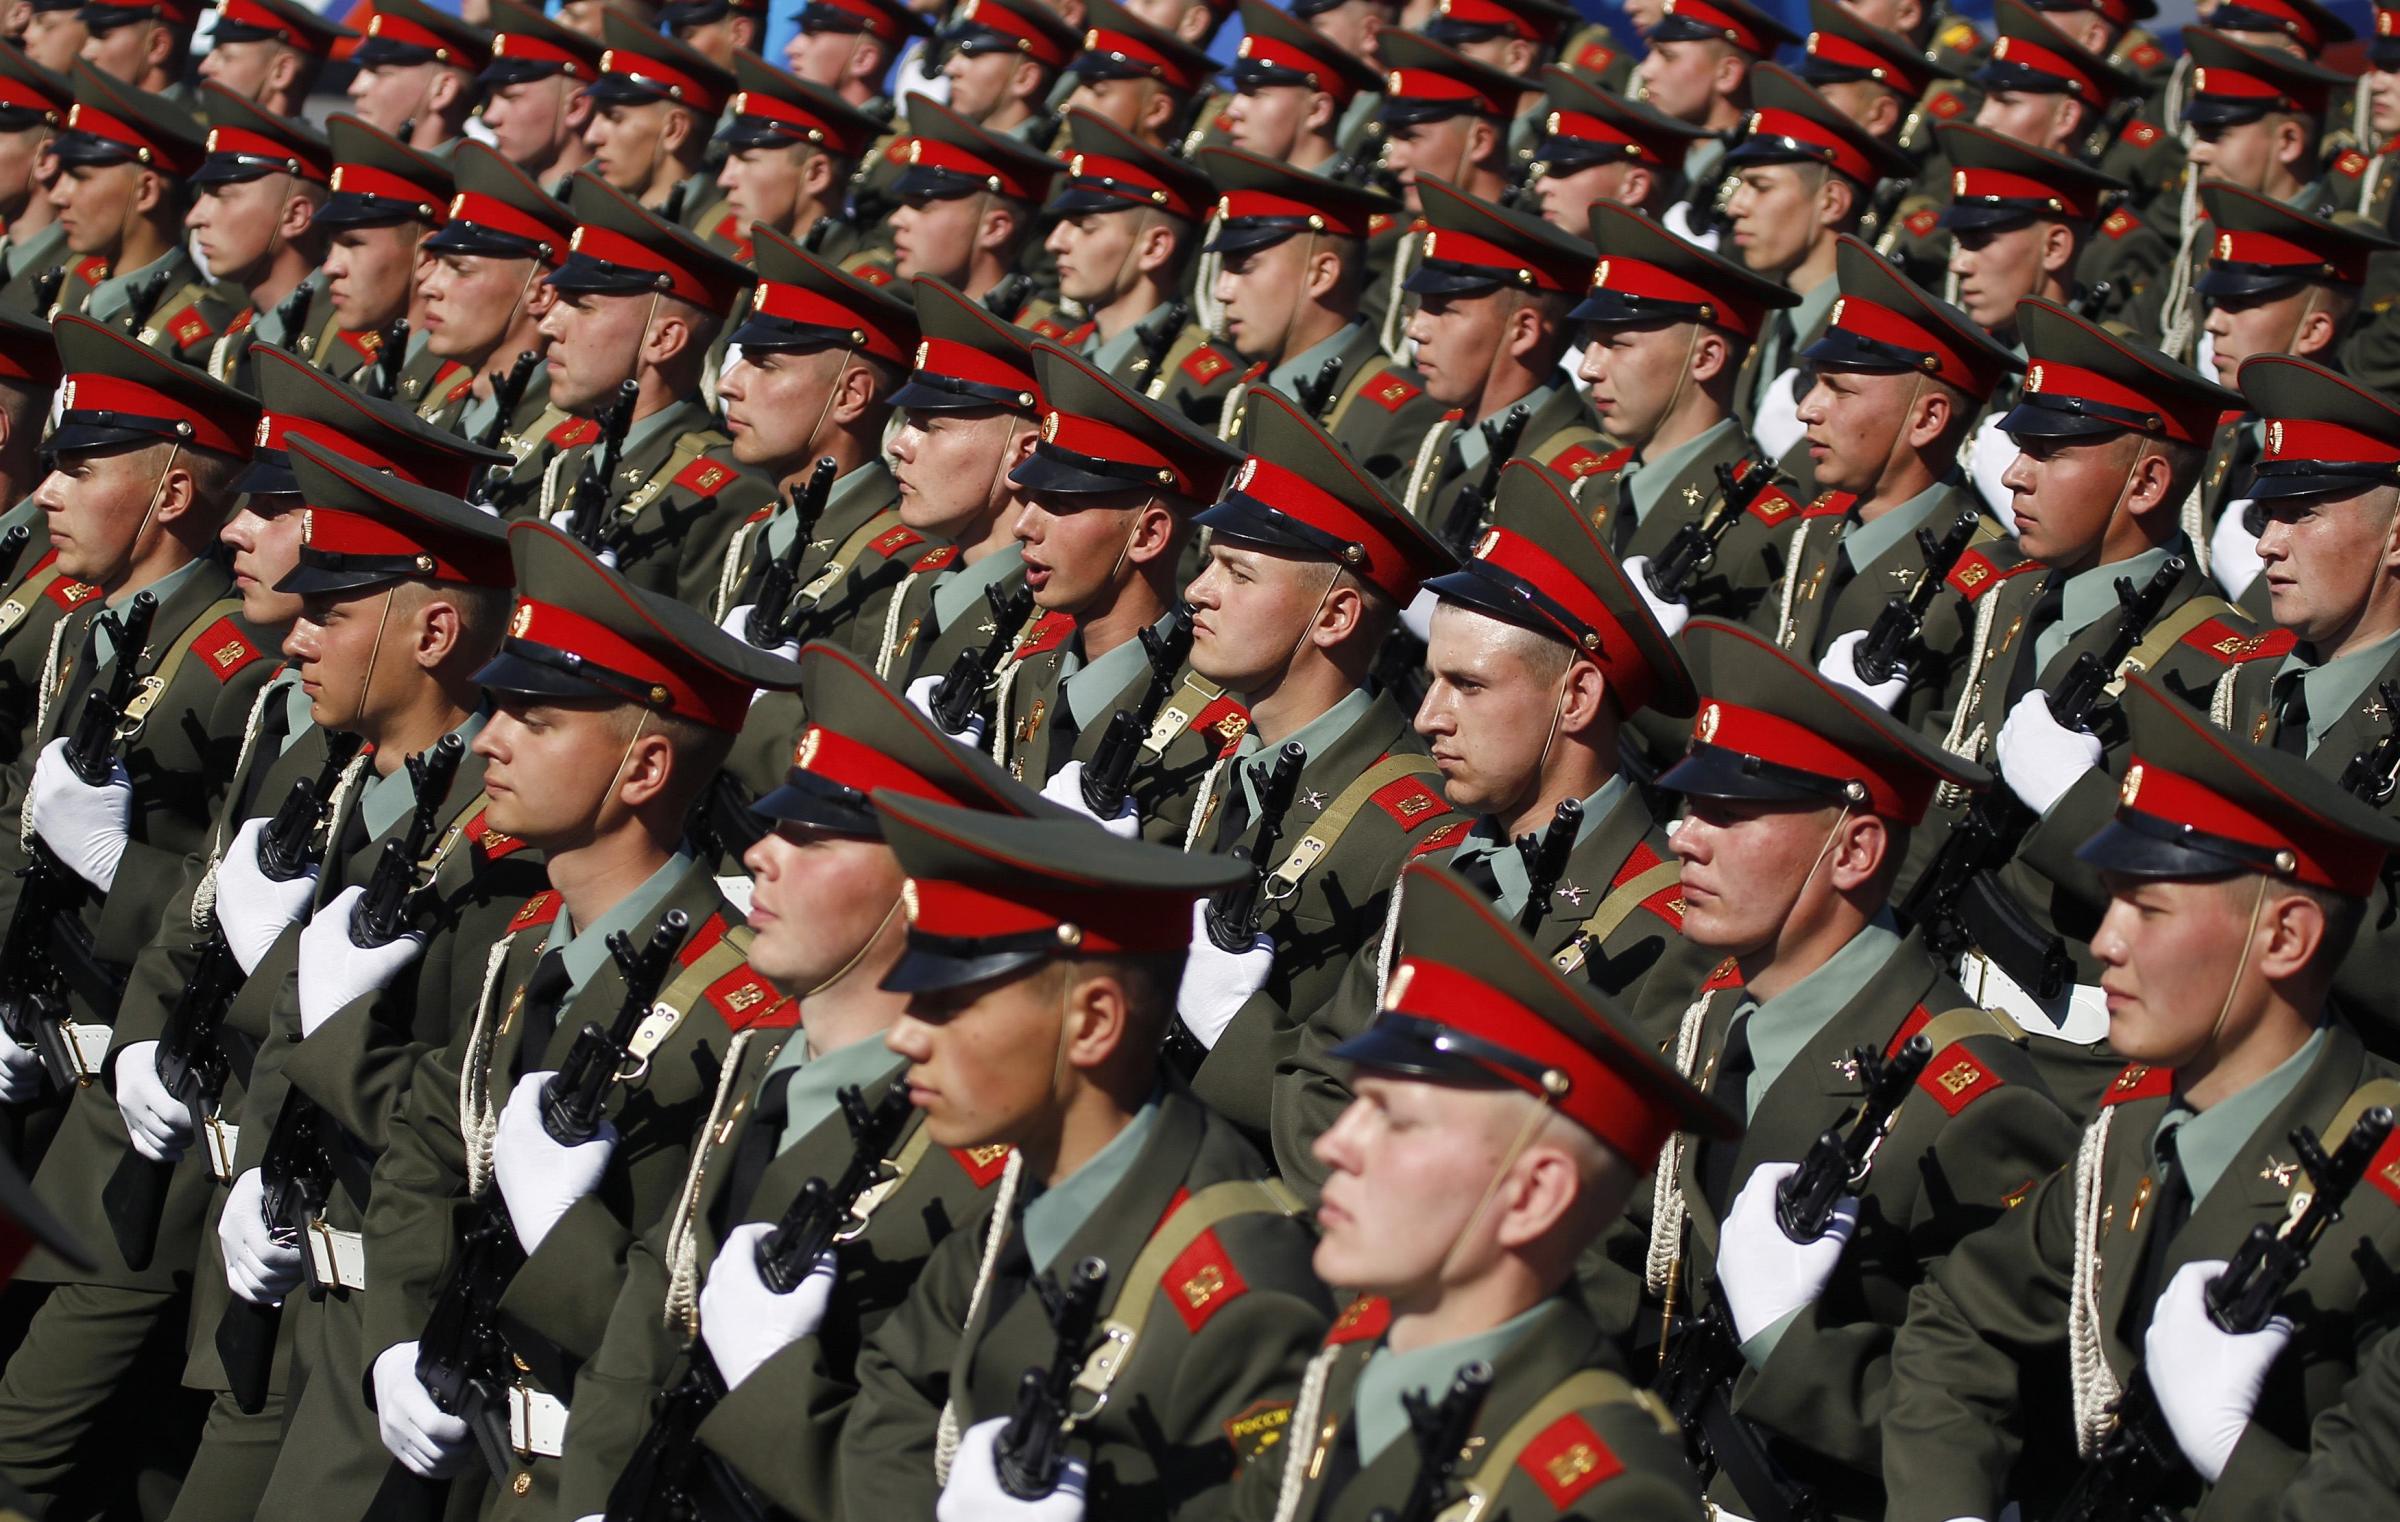 俄罗斯举行冷战后最大阅兵式 上万军人参阅(组图) - 新闻 - 加拿大华人网 - 加拿大华人门户网站